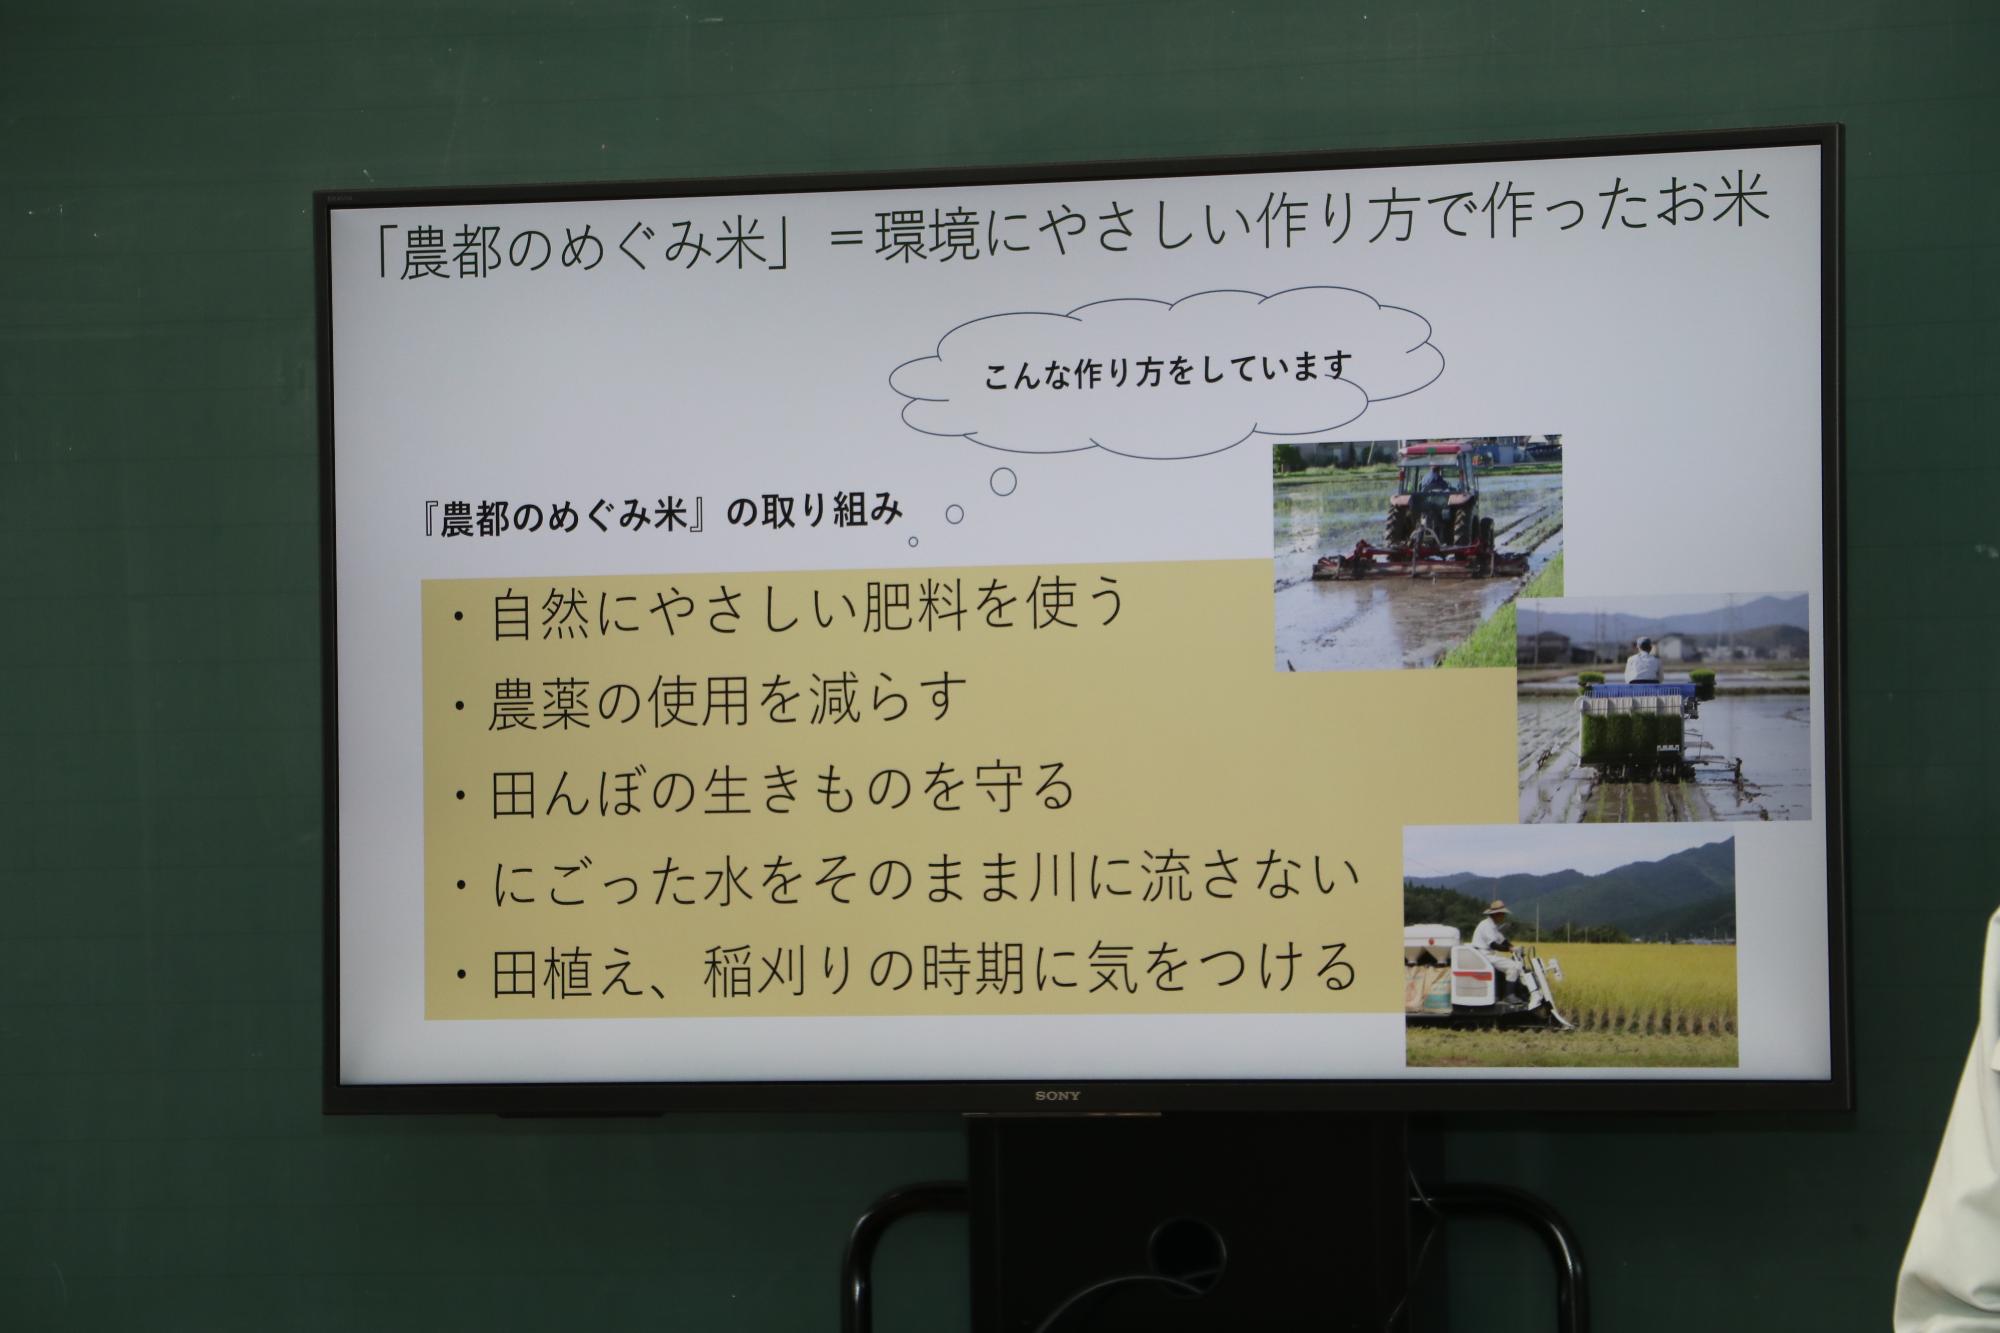 農都のめぐみ米のスライド画像